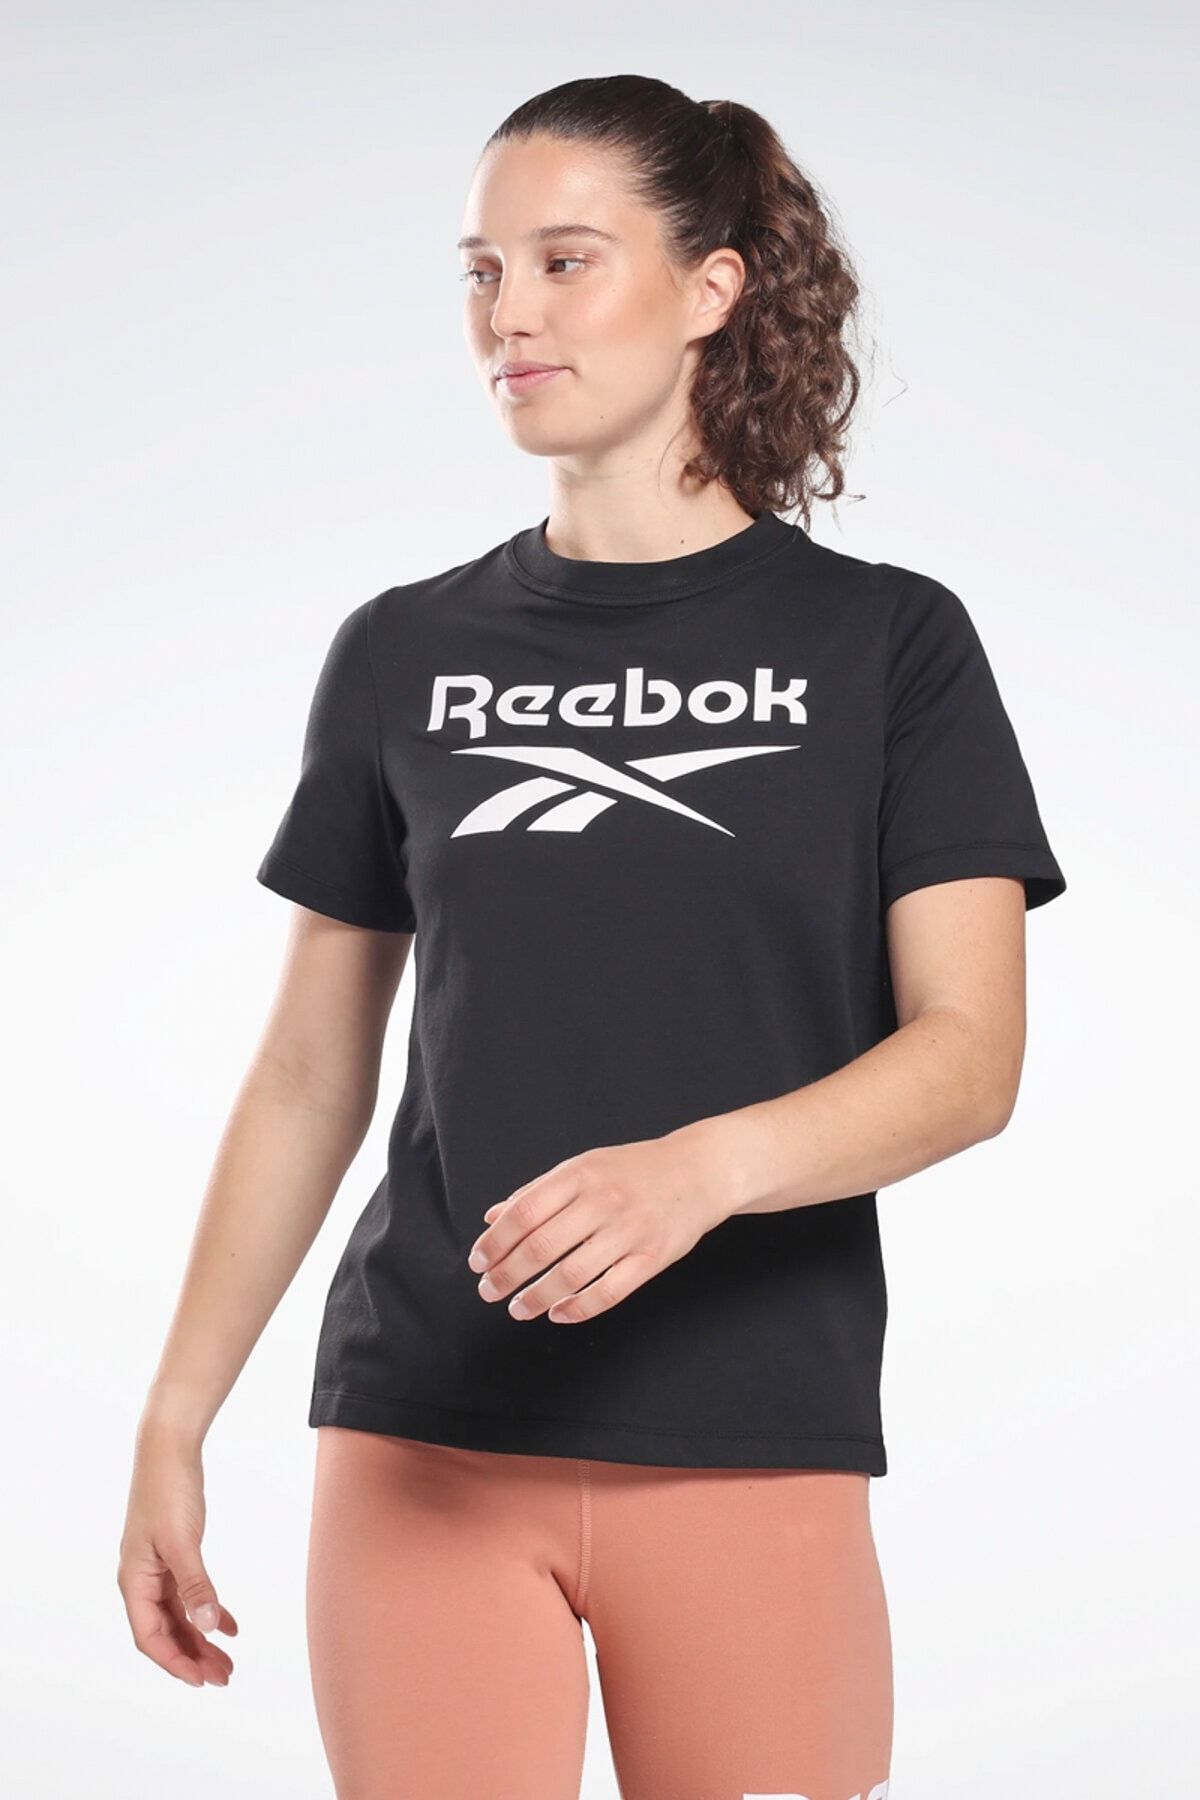 Reebok Rı Bl Tee Siyah Kadın Kısa Kol T-shirt